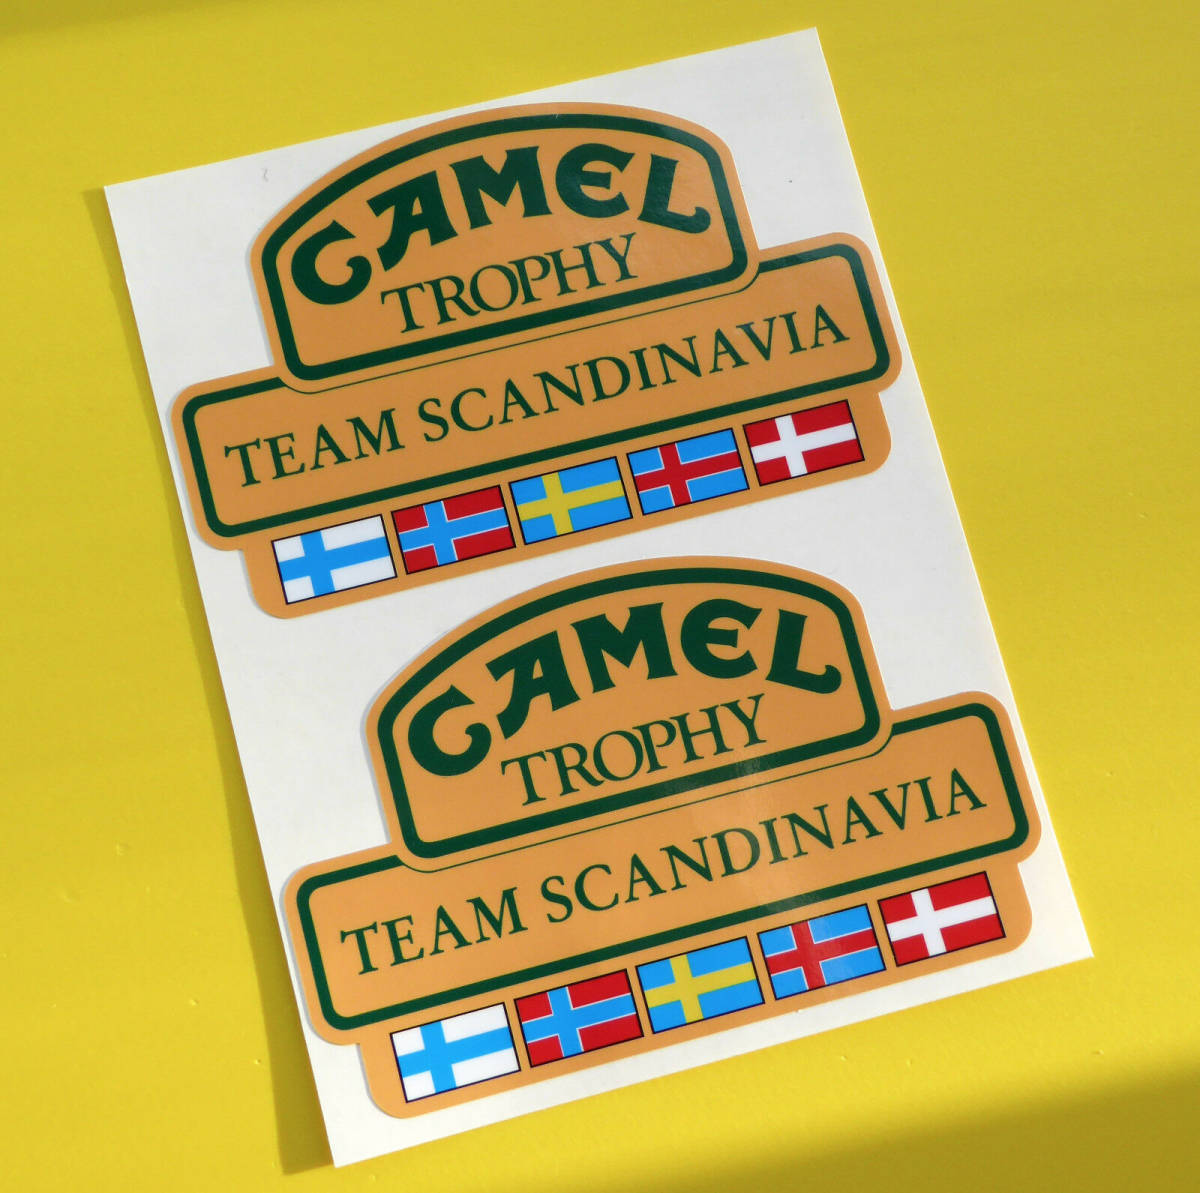 送料無料 CAMEL TROPHY Team SCANDINAVIA STICKER キャメル ステッカー デカール セット 120mm x 75mm 2枚セット_画像1